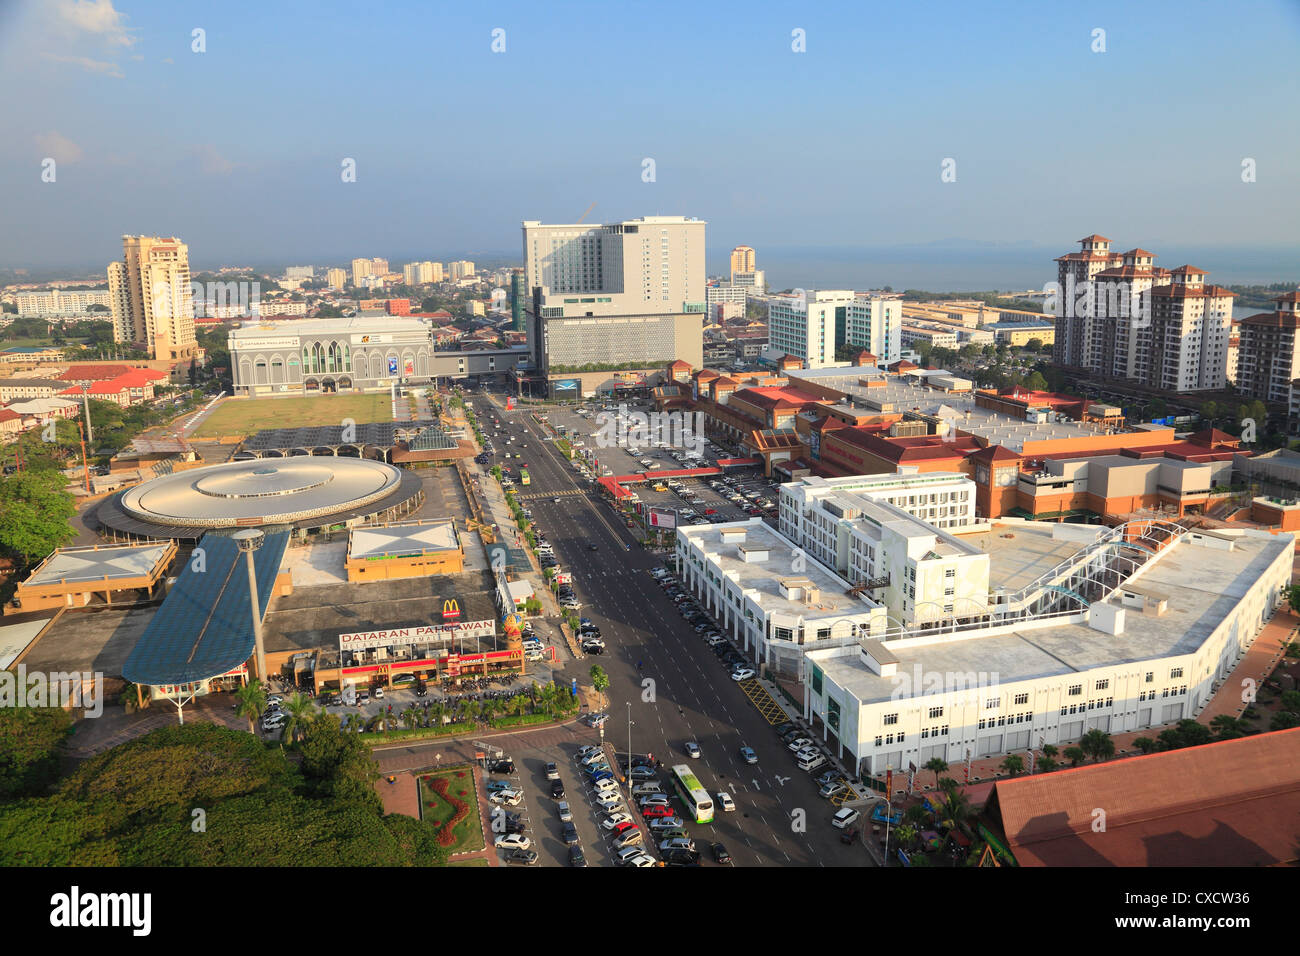 Cityscape of Malacca, Malacca, Malaysia Stock Photo